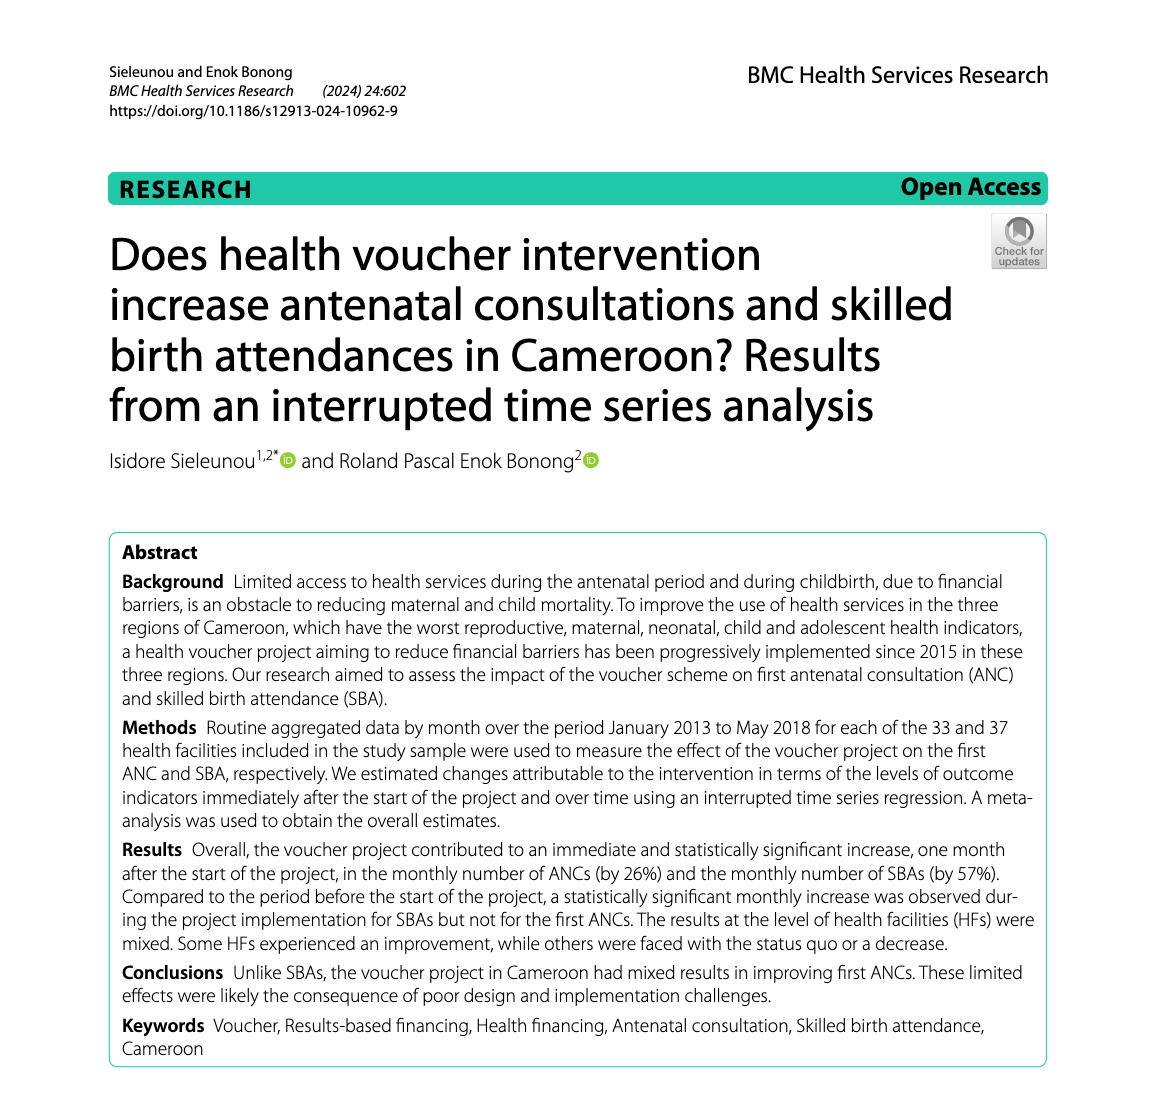 Les bons de santé augmentent-ils les consultations prénatales et les accouchements assistés par un personnel qualifié au Cameroun ? Résultats d'une analyse de séries temporelles interrompues